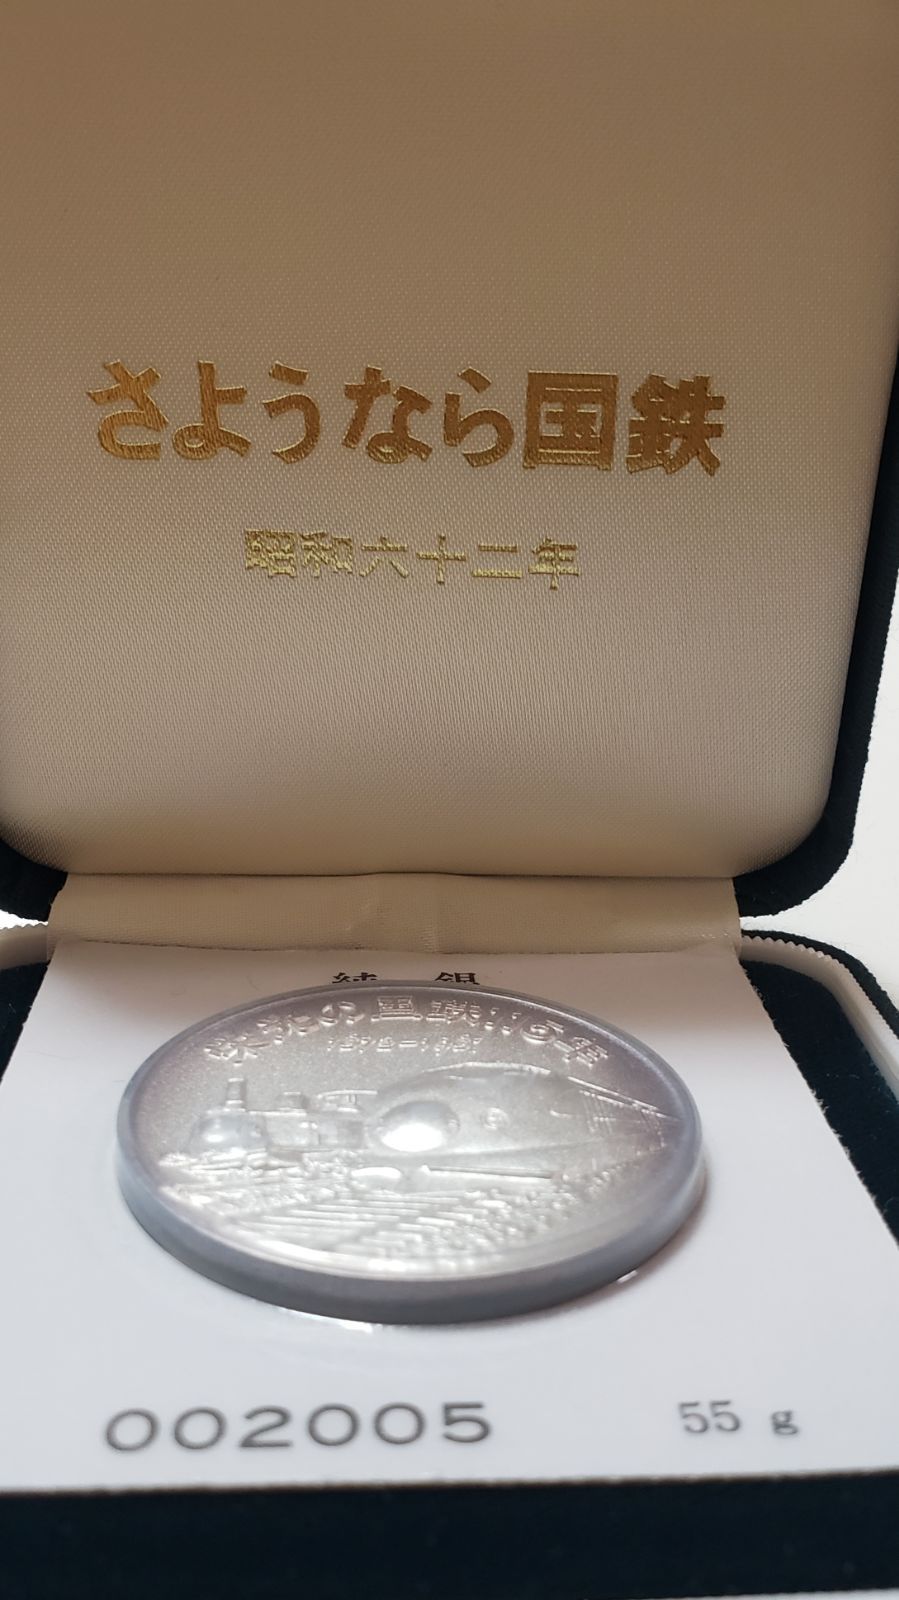 さようなら国鉄 記念純銀メダル昭和62年 - コレクション